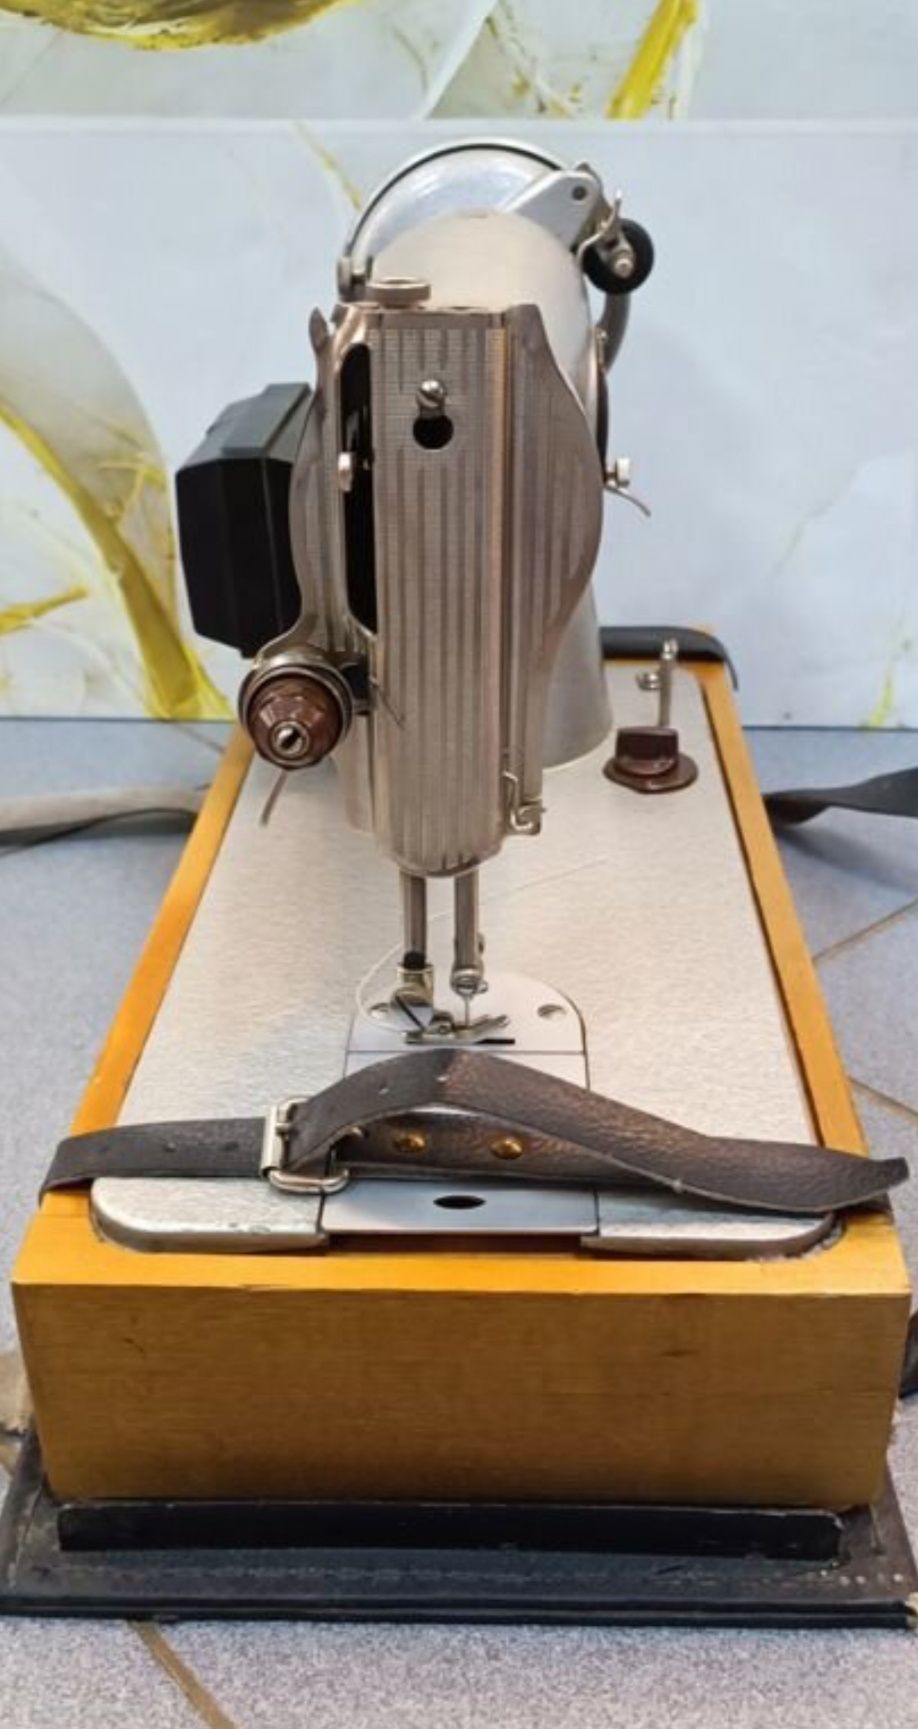 новая швейная машинка Подольск с электроприводом шьет отлично гарантия